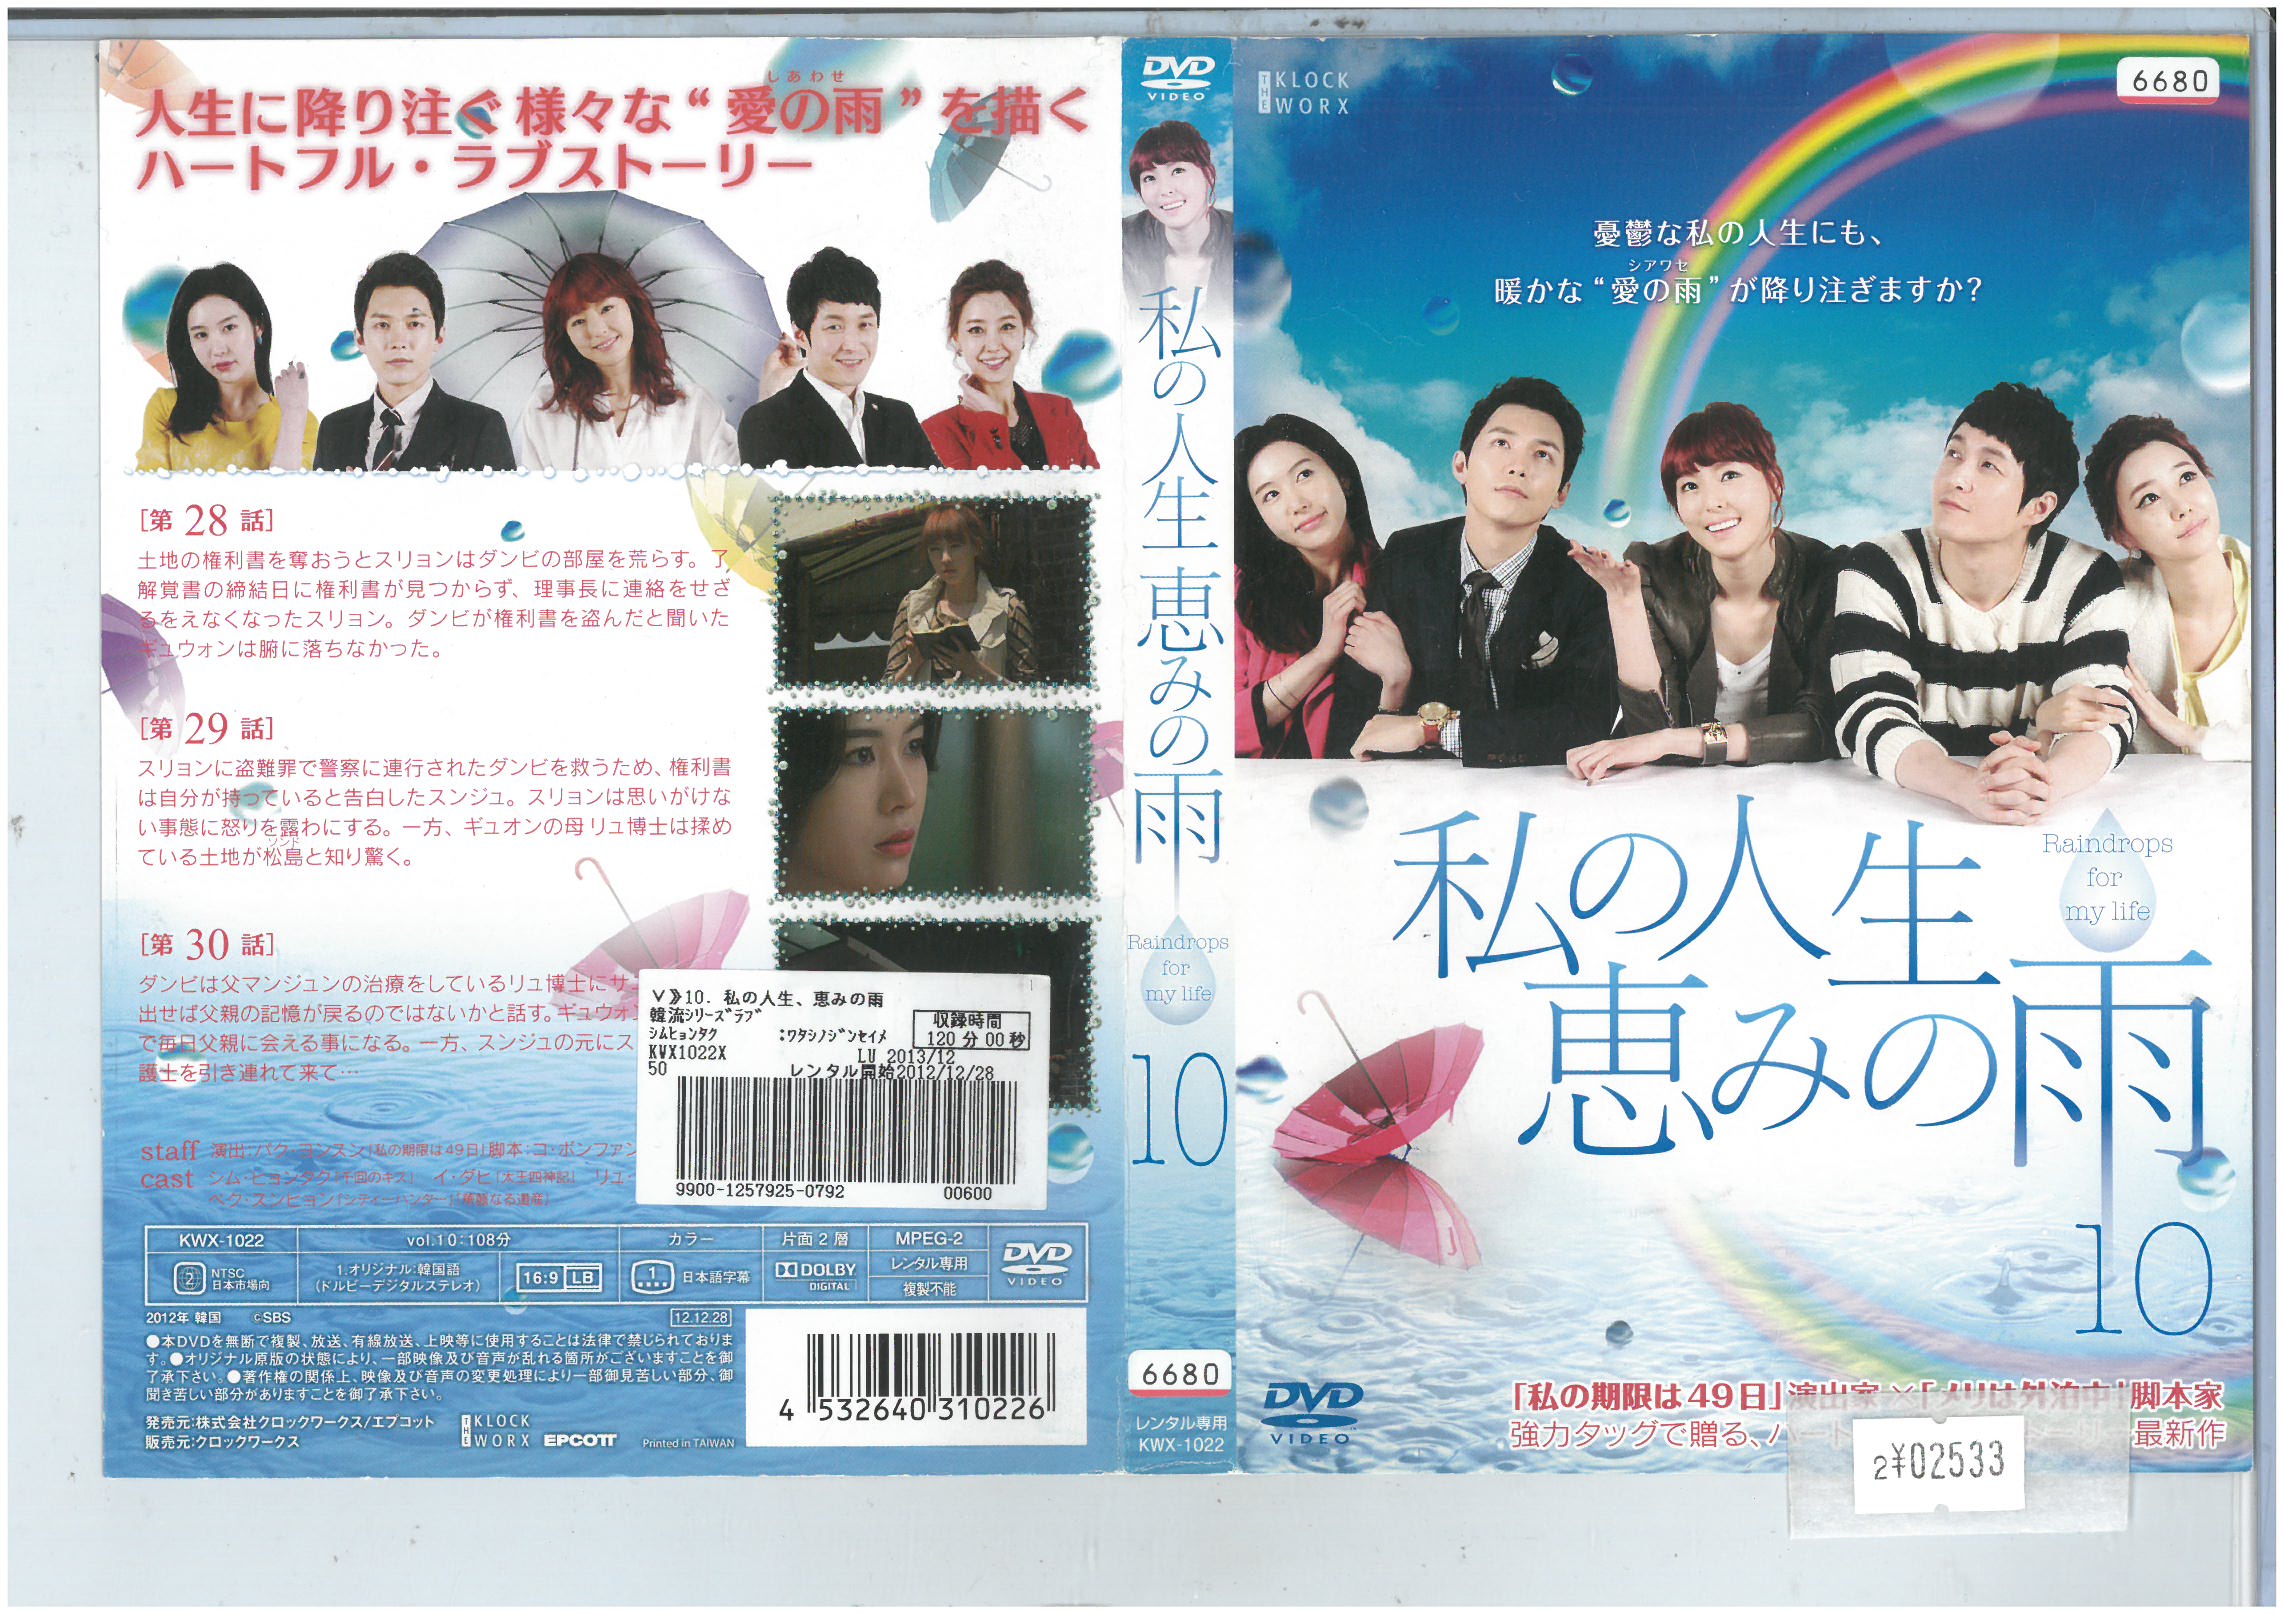 私の人生恵みの雨 vol.10 KWX-1022【ケースなし】中古DVD_f